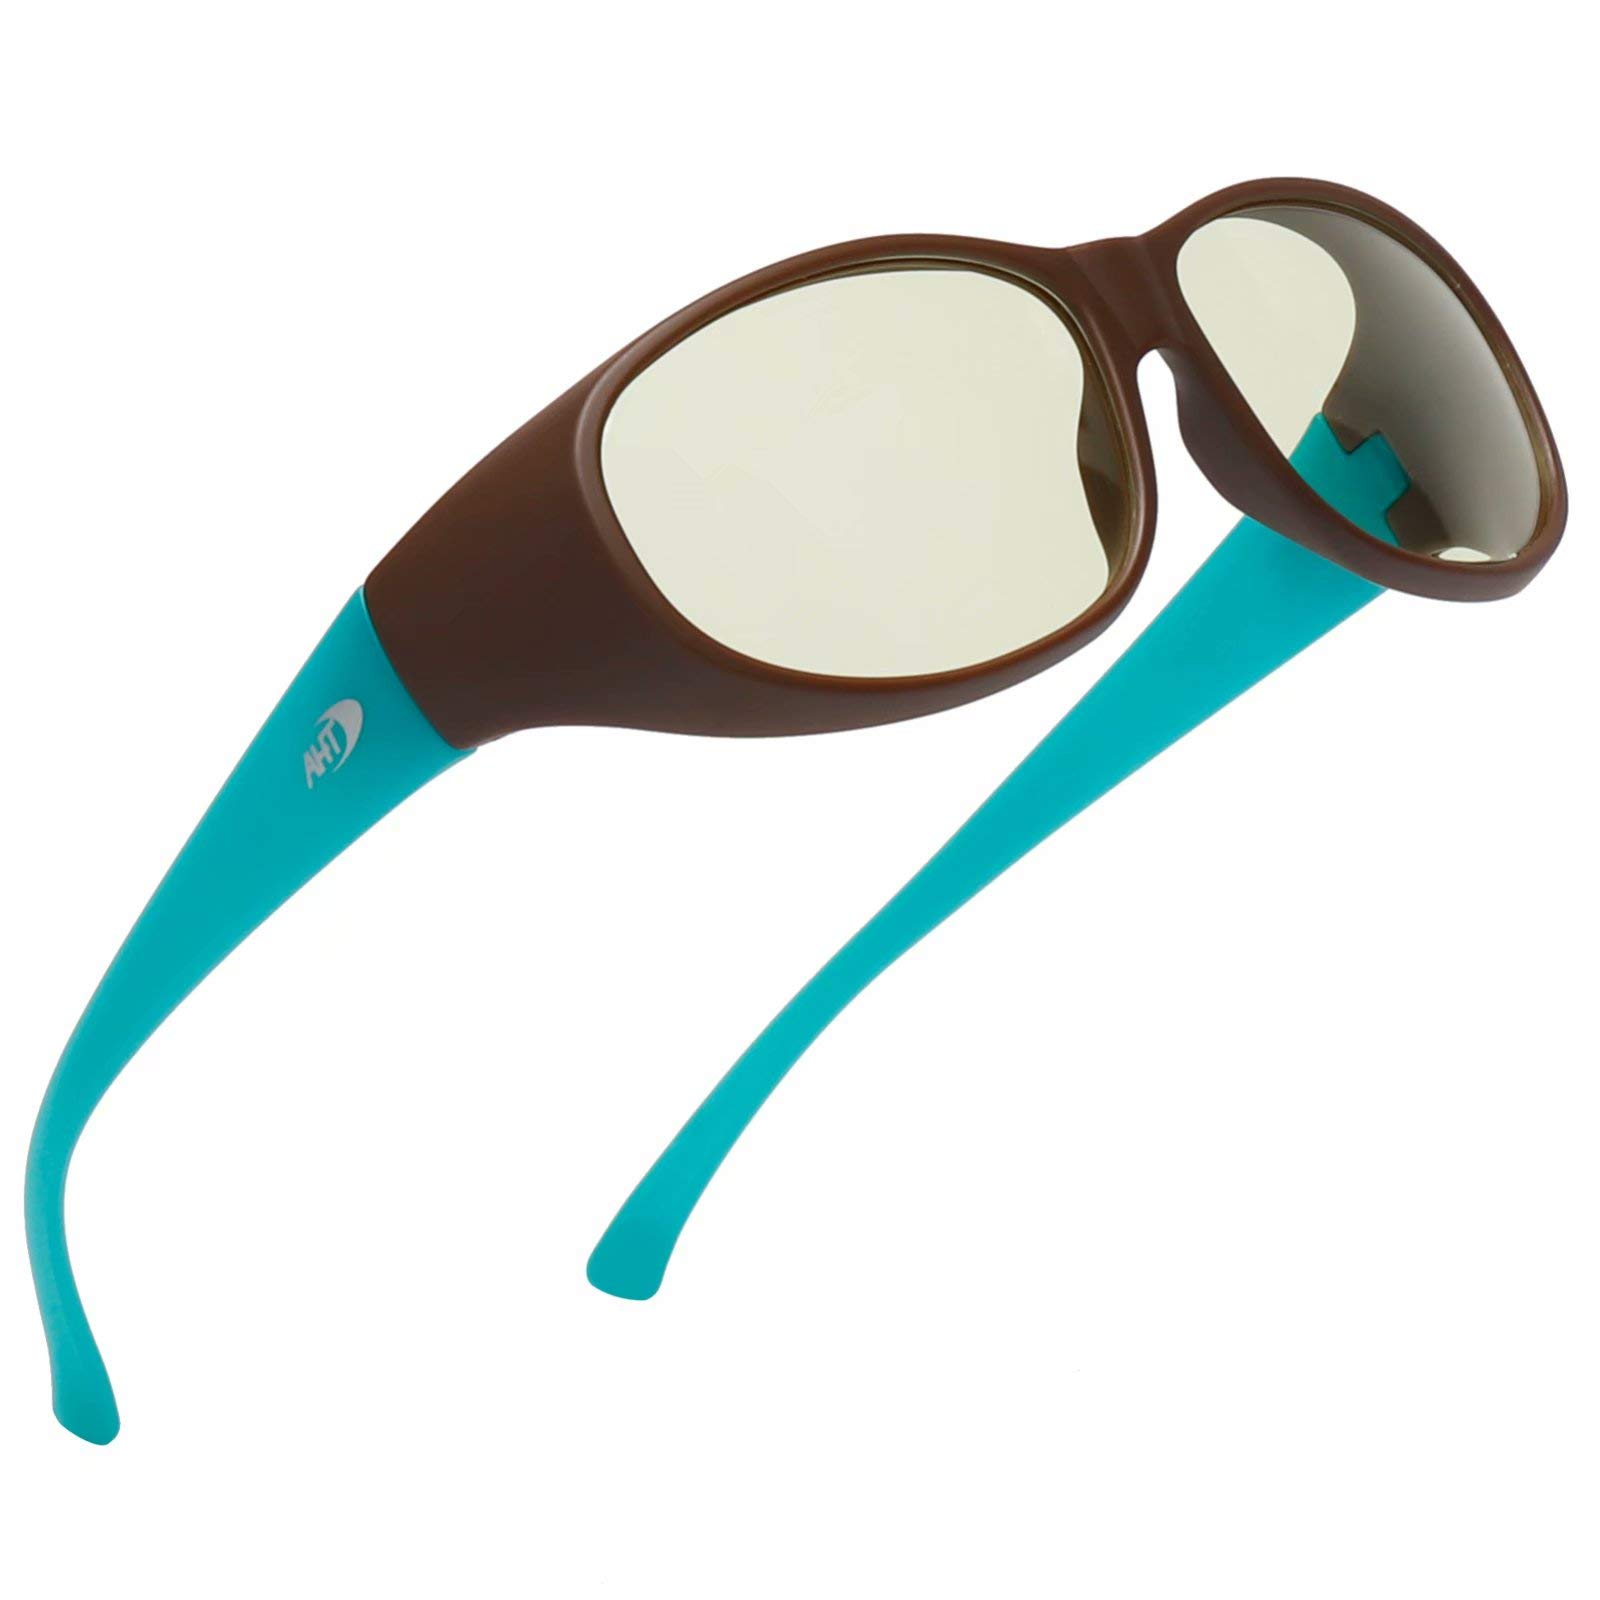 Fit Over Blue Light Glasses - AHT Anti Blue Ray Computer Glasses, Wear Over Prescription Glasses/Reading Glasses, UV400 Lens, Anti Eyestrain, Reduce Headache, Sleep Better